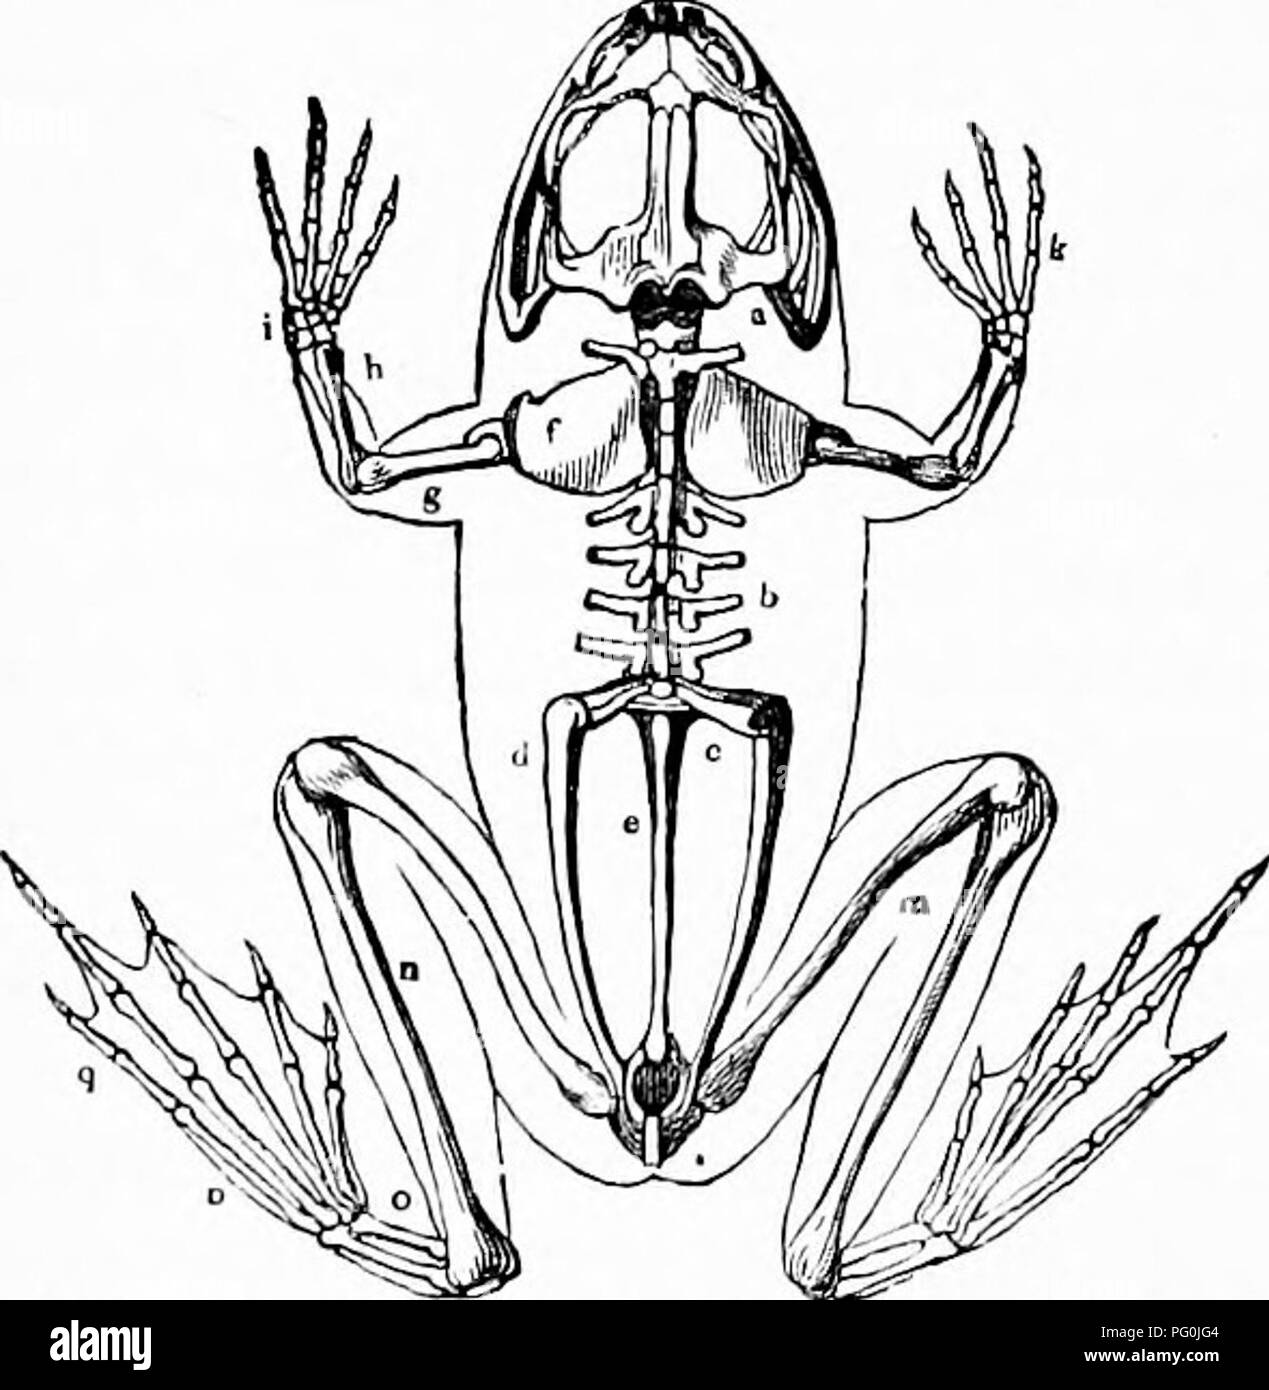 Librosubjetzoología Imágenes de stock en blanco y negro - Alamy